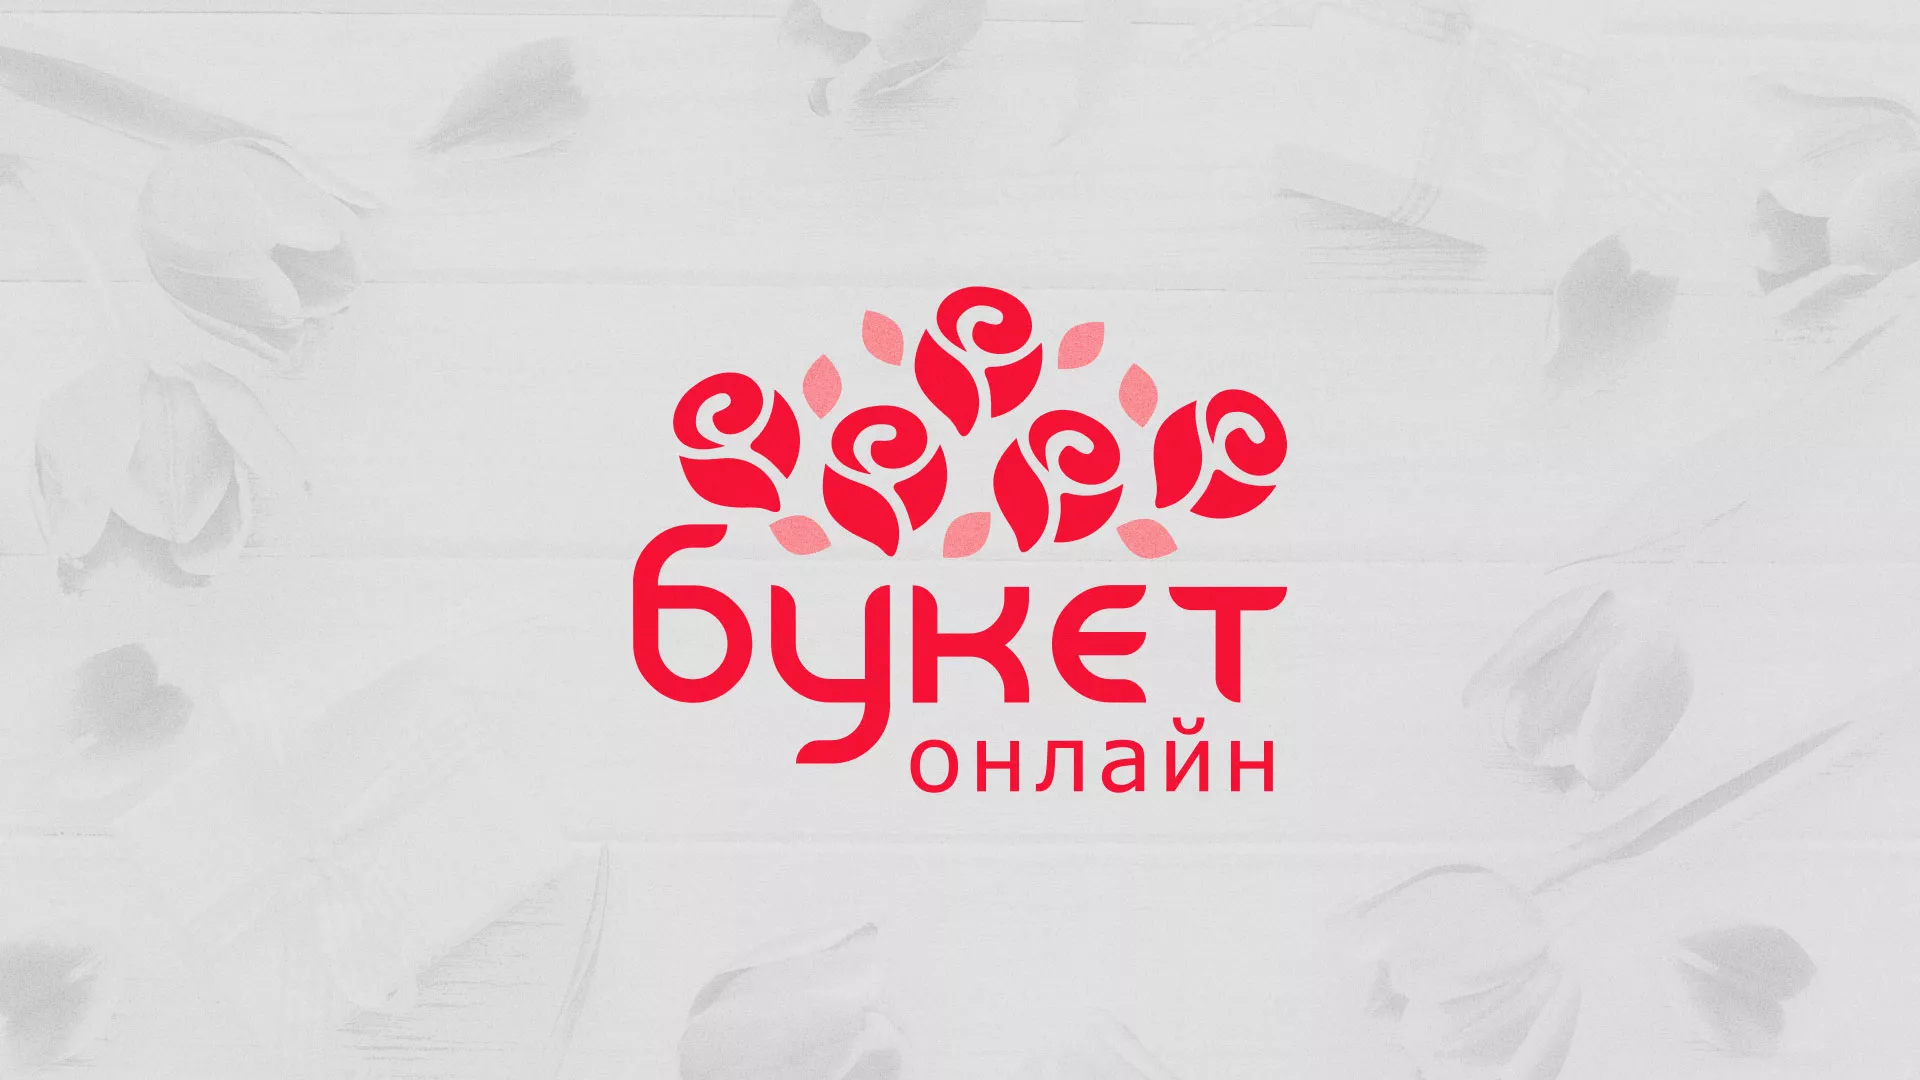 Создание интернет-магазина «Букет-онлайн» по цветам в Камызяке